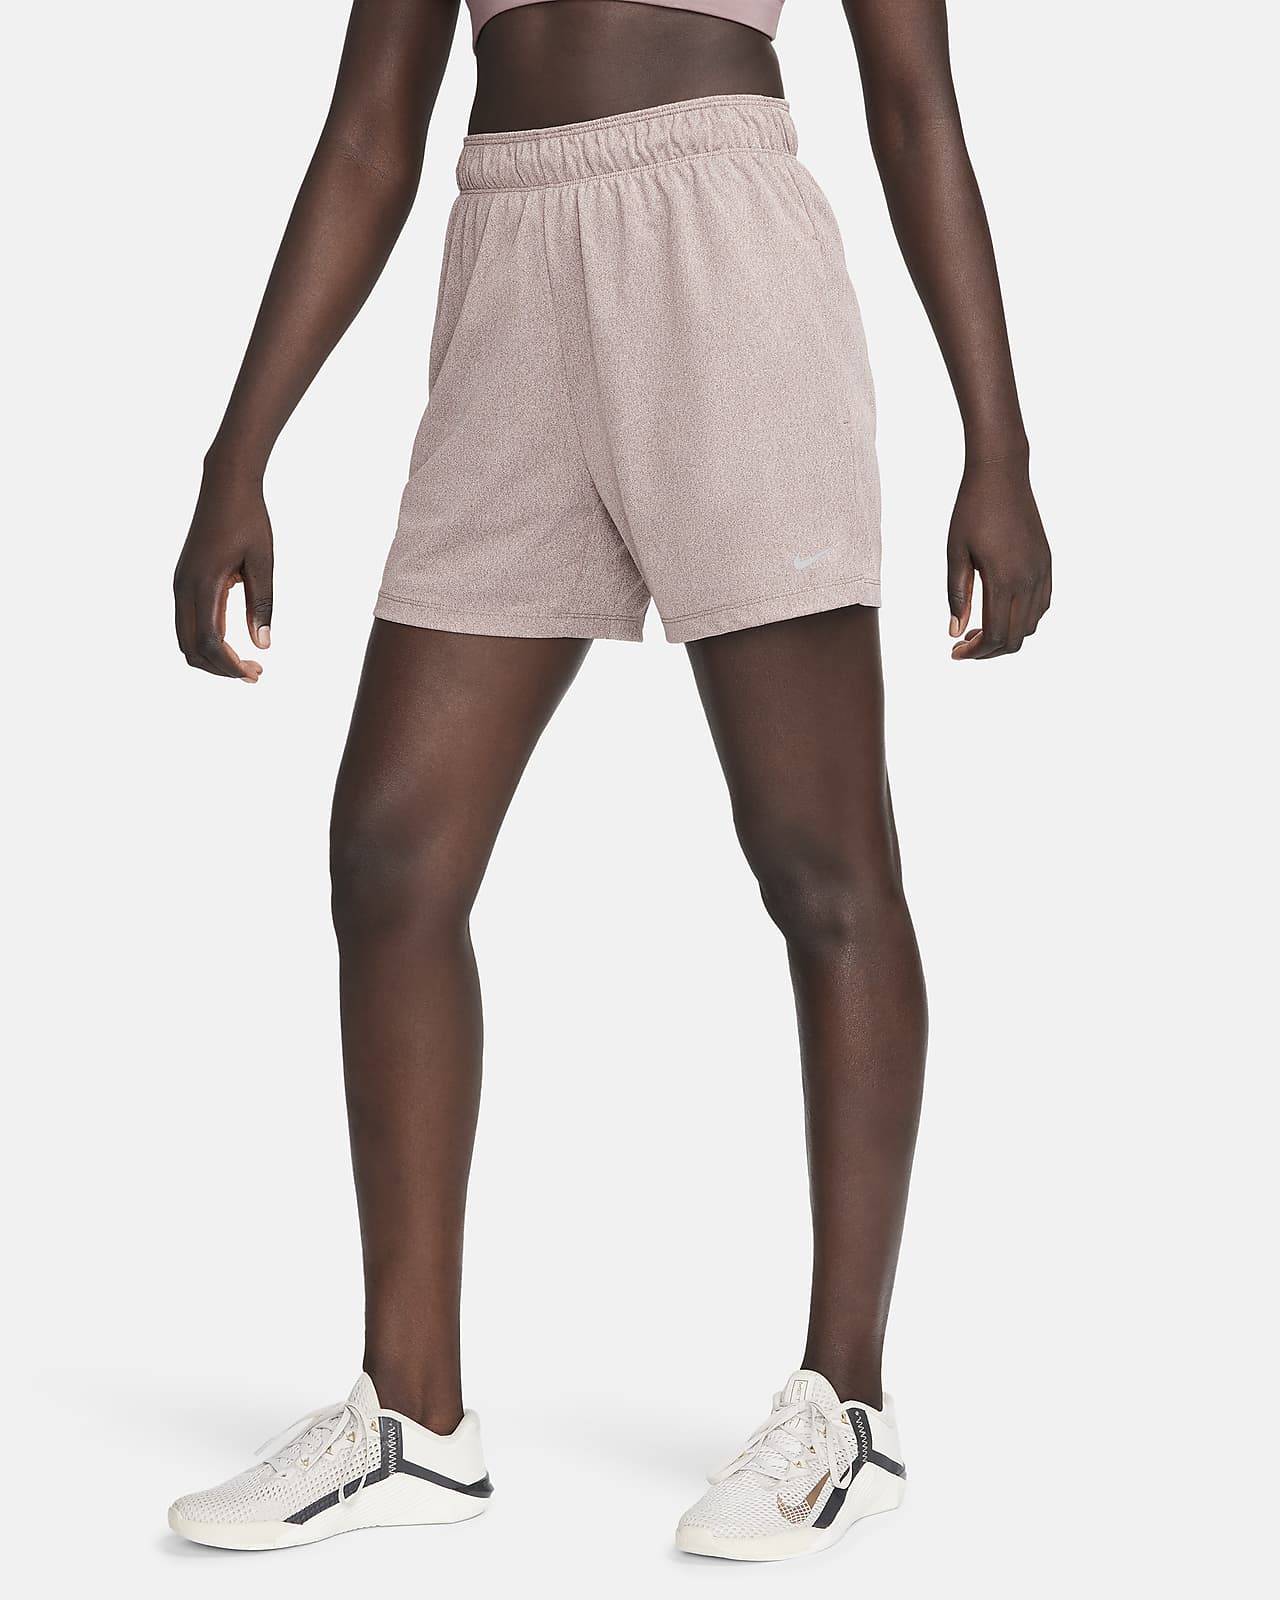 Nike Attack Dri-FIT középmagas derekú, 13 cm-es, bélés nélküli női fitneszrövidnadrág